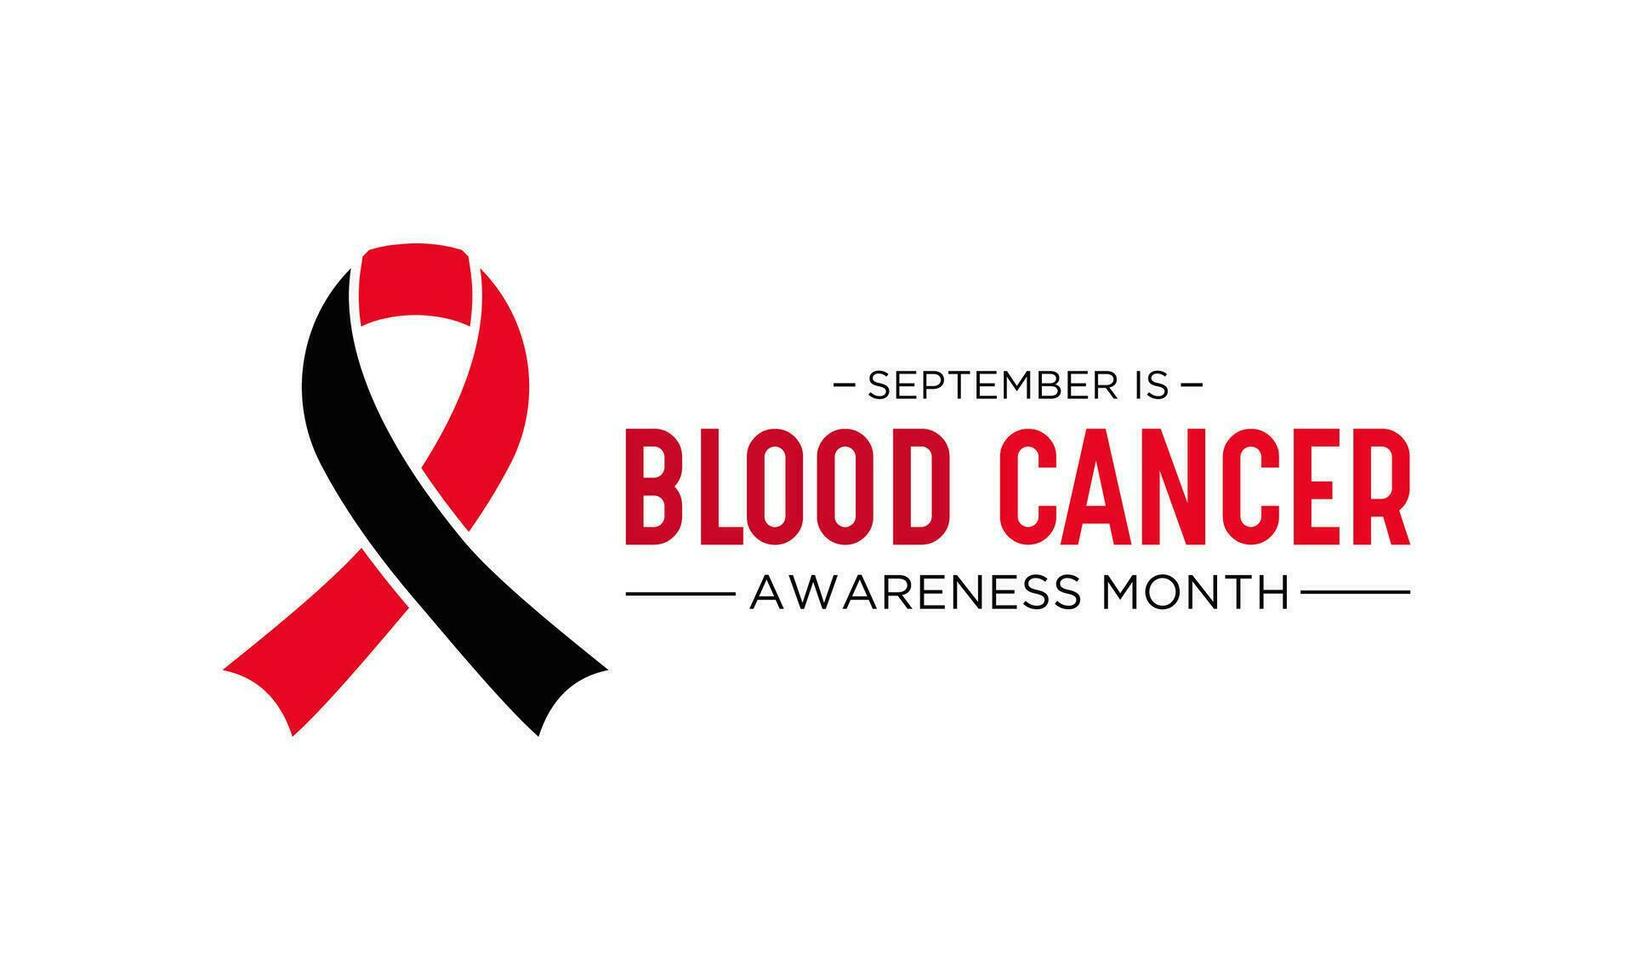 bloed kanker bewustzijn maand is opgemerkt elke jaar in september. september is bloed kanker bewustzijn maand. vector sjabloon voor banier, groet kaart, poster met achtergrond. vector illustratie.